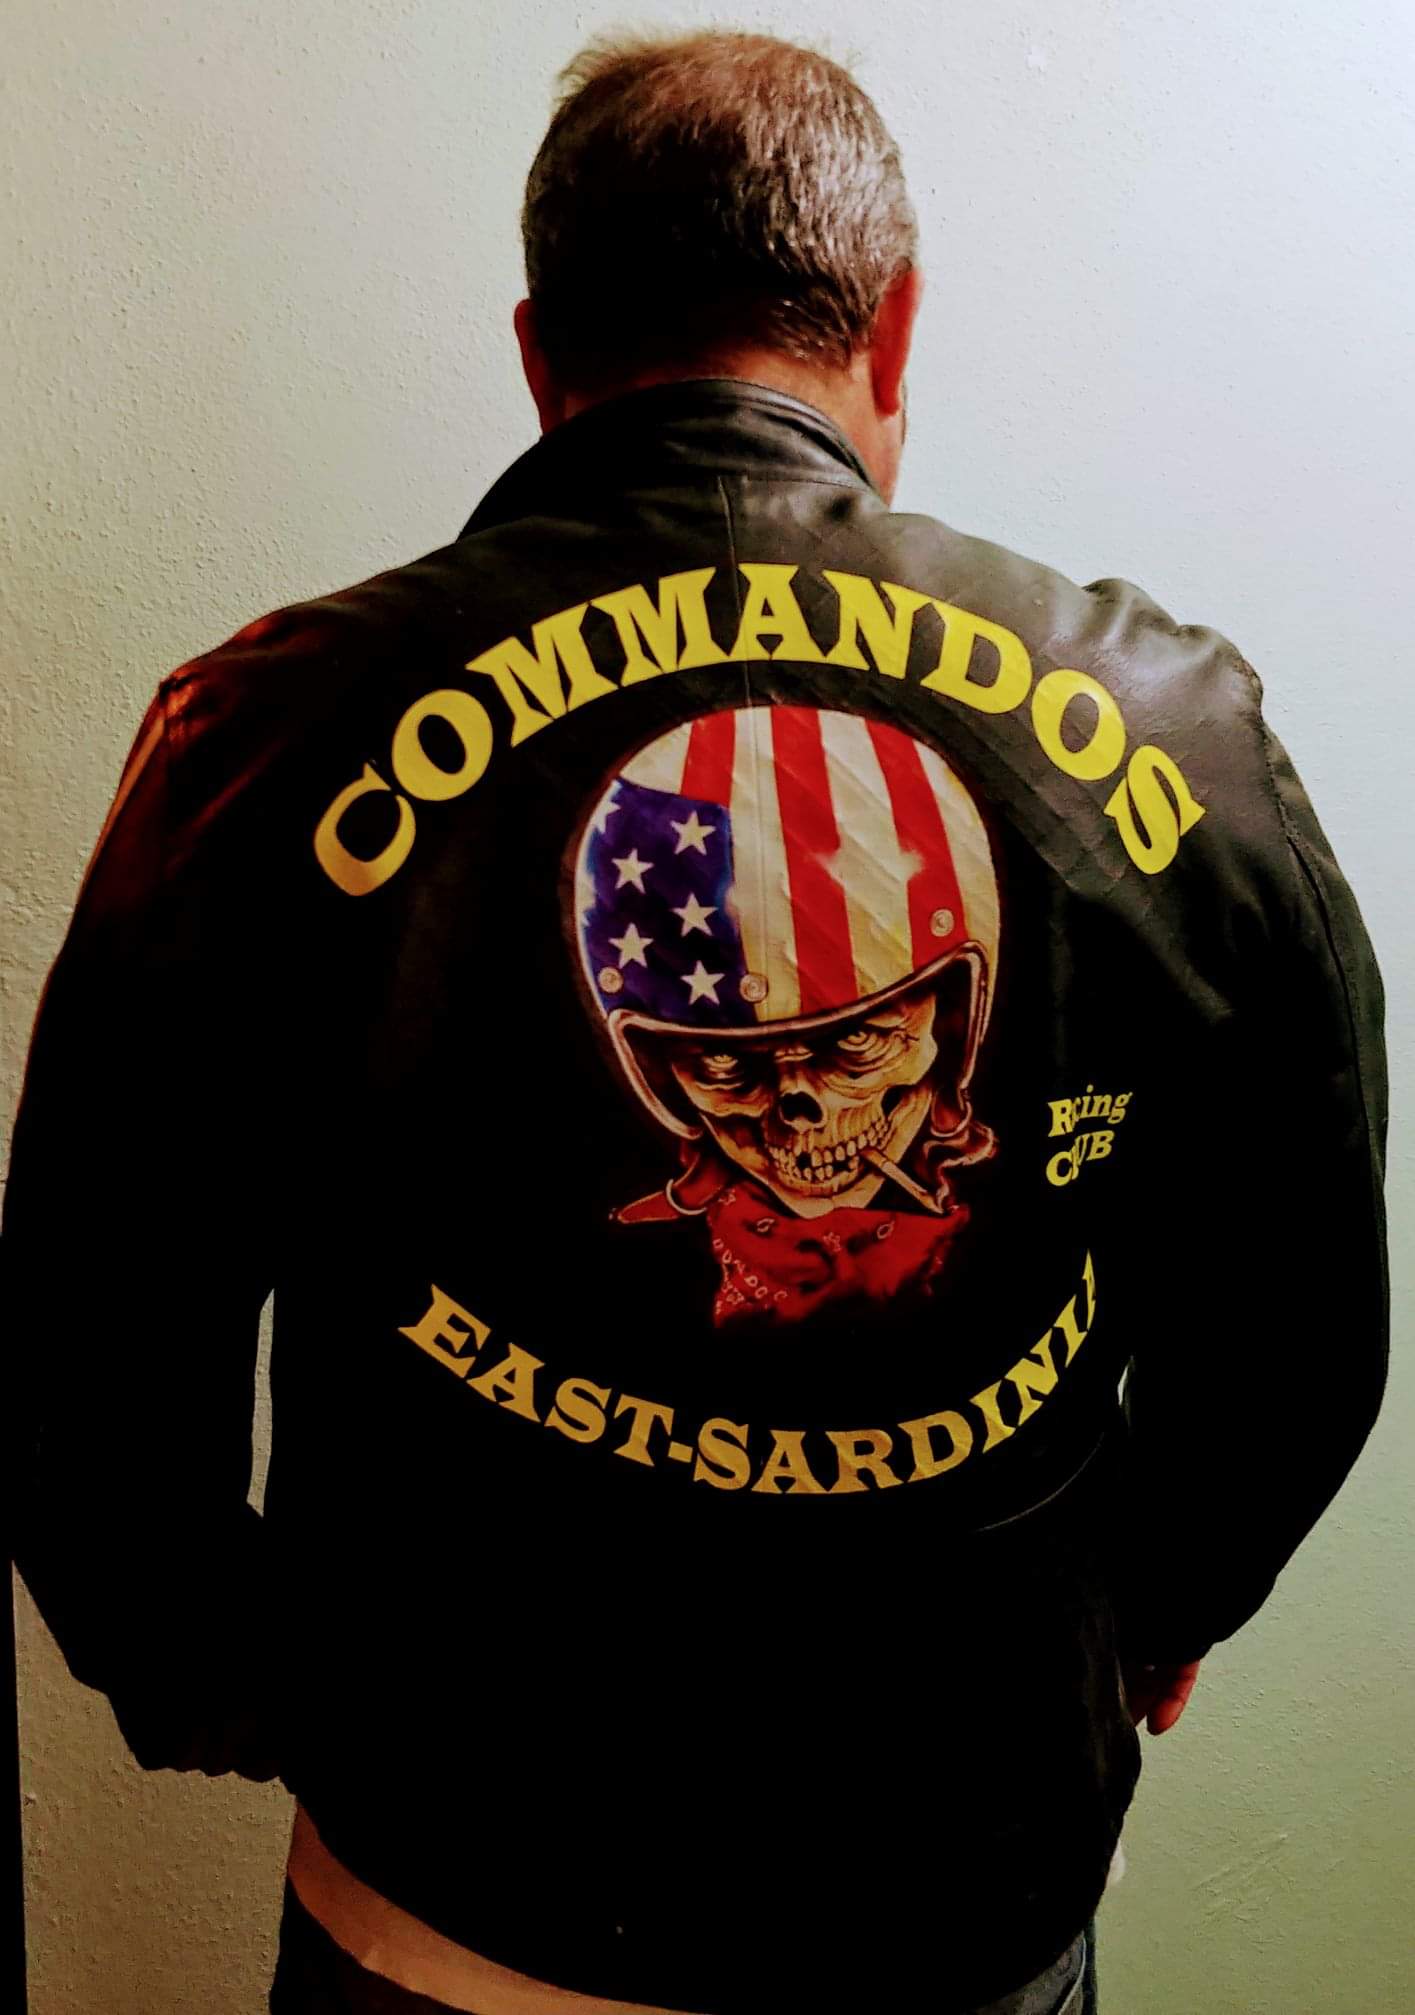 Immagine del simbolo del Motoclub Commandos.